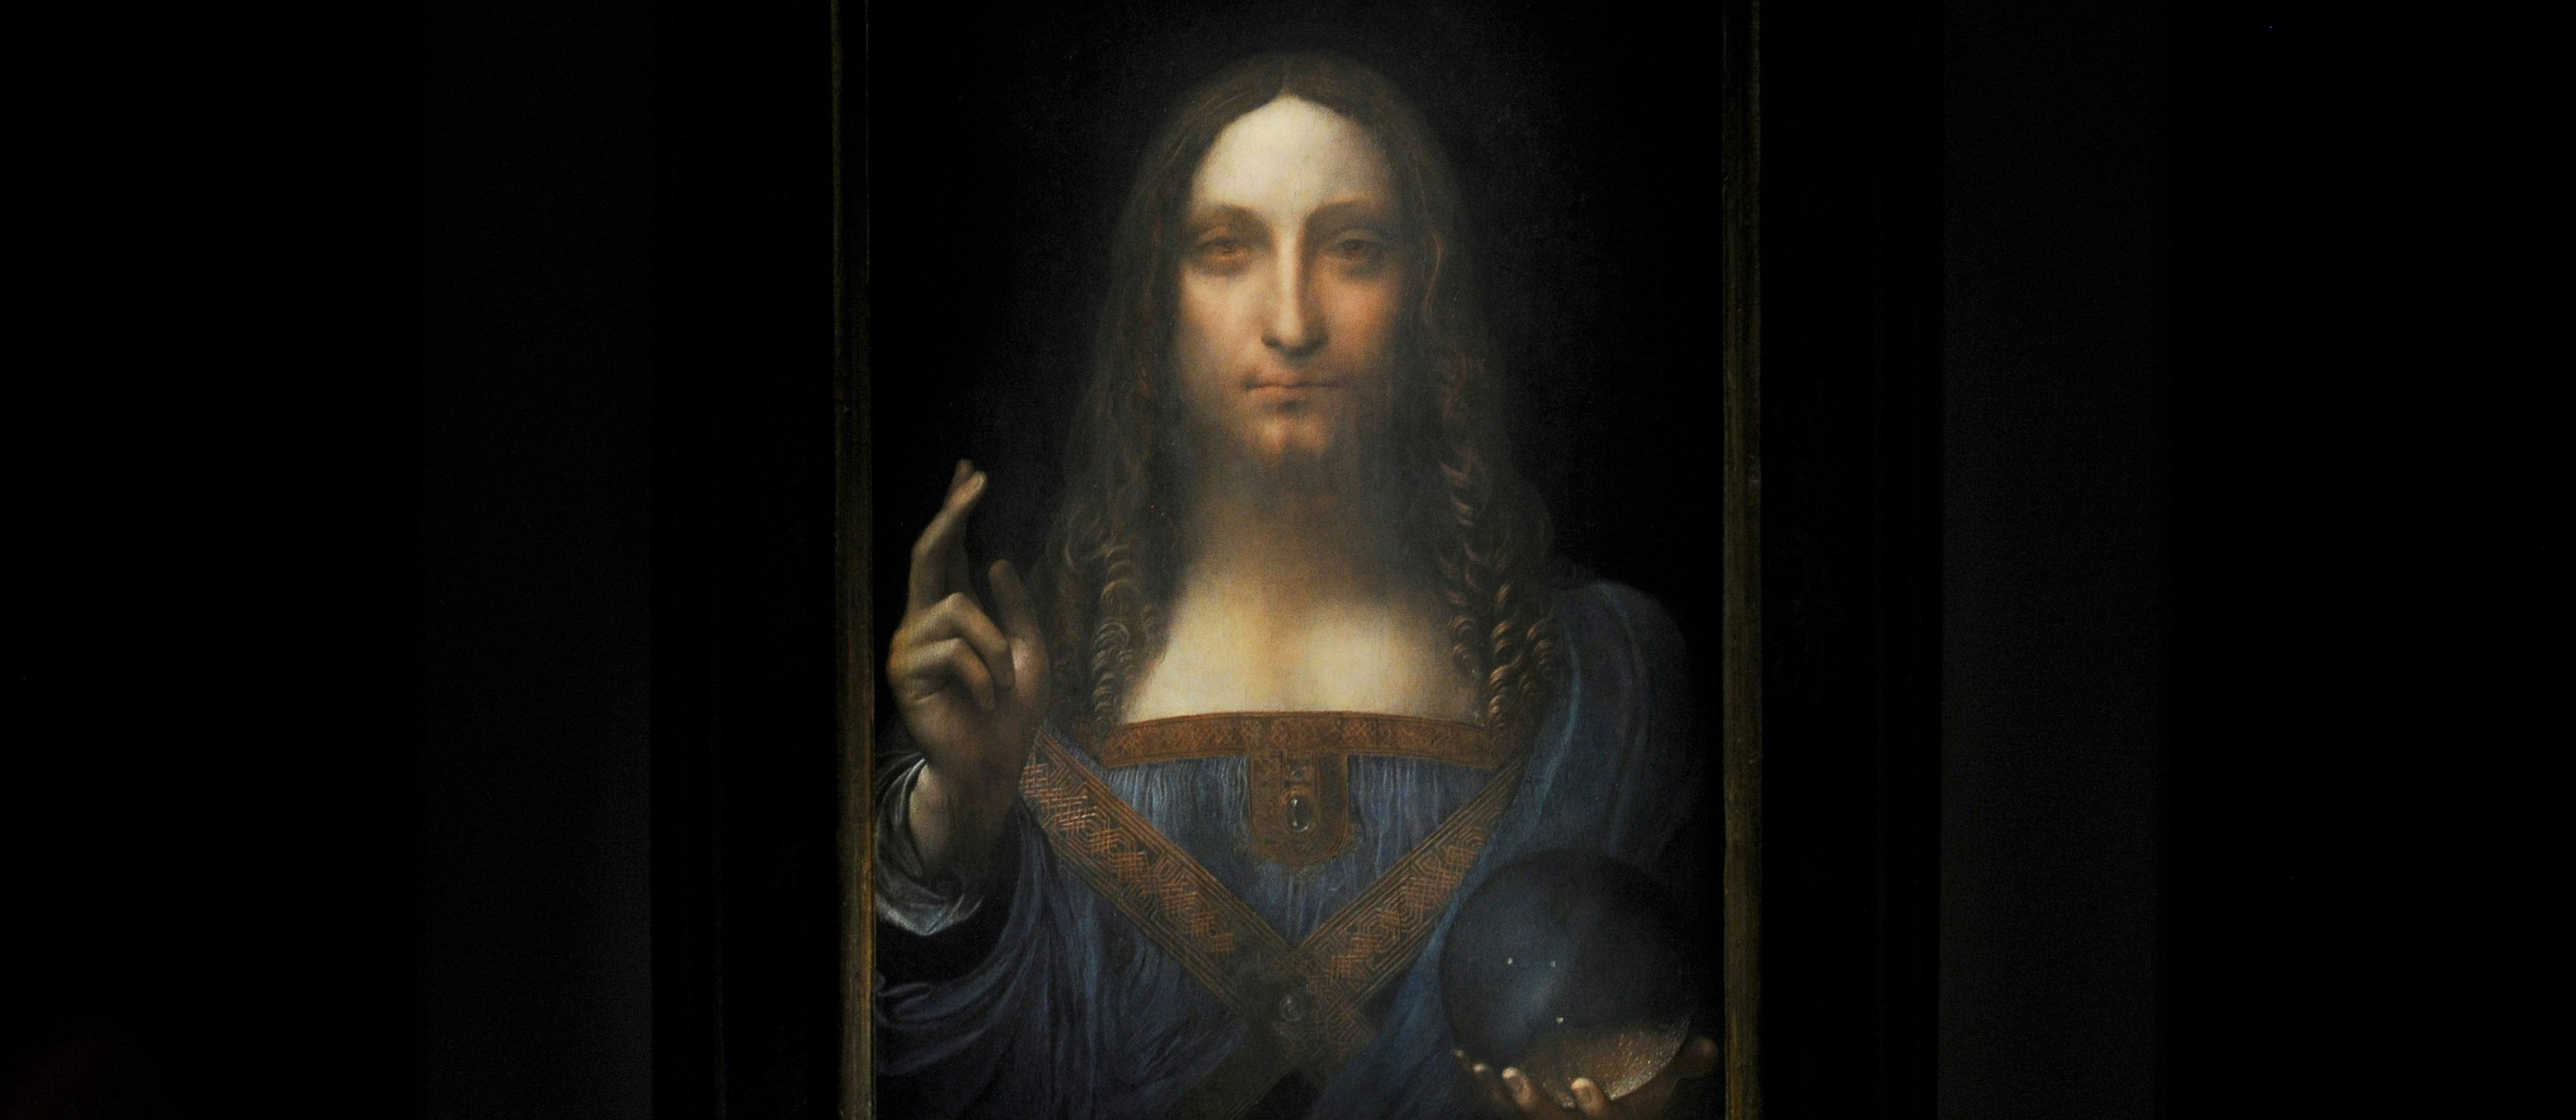 Von 45 Pfund auf 450 Millionen Dollar: Das Gemälde "Salvator Mundi" soll von Leonardo da Vinci um das Jahr 1500 geschaffen worden sein, jahrhundertelang wurde es zuvor seinem Umfeld zugerechnet. In den 1950ern wechselte es noch für 45 Pfund den Besitzer, seit dem Rekorderlös bei einer Auktion im Jahr 2017 ist das Kunstwerk aus der Öffentlichkeit verschwunden.